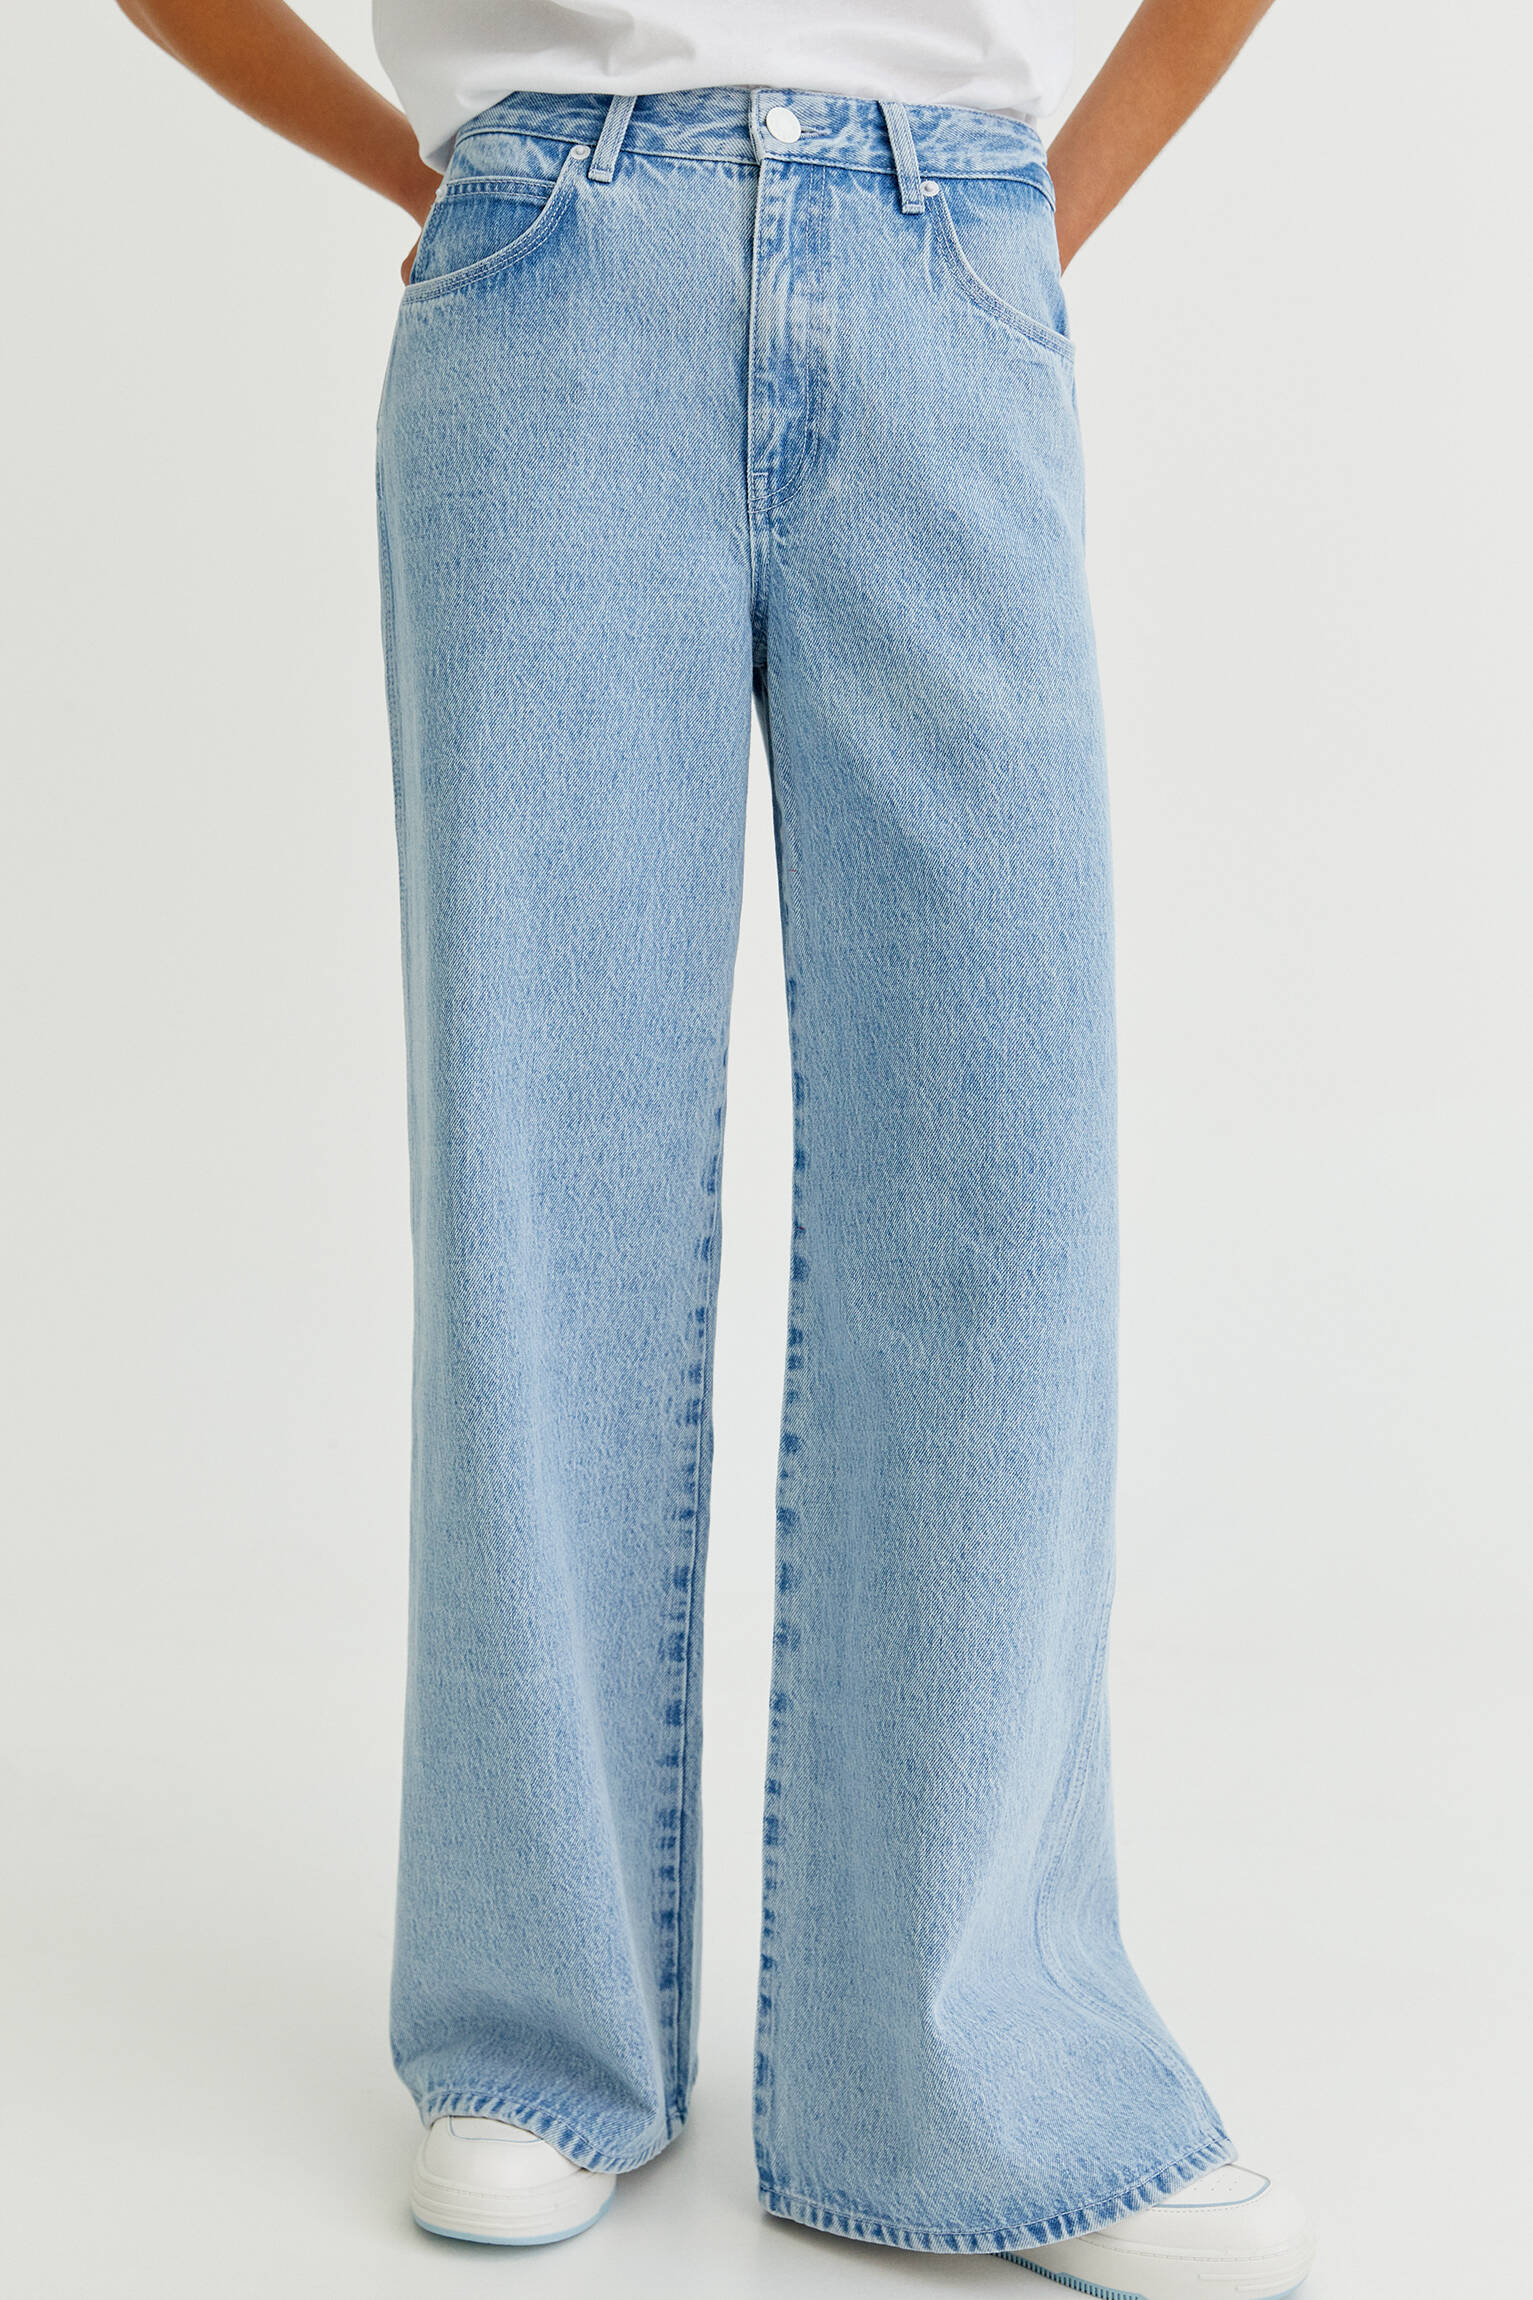 Modalite.net - Pull & Bear - High-waist wide-leg jeans